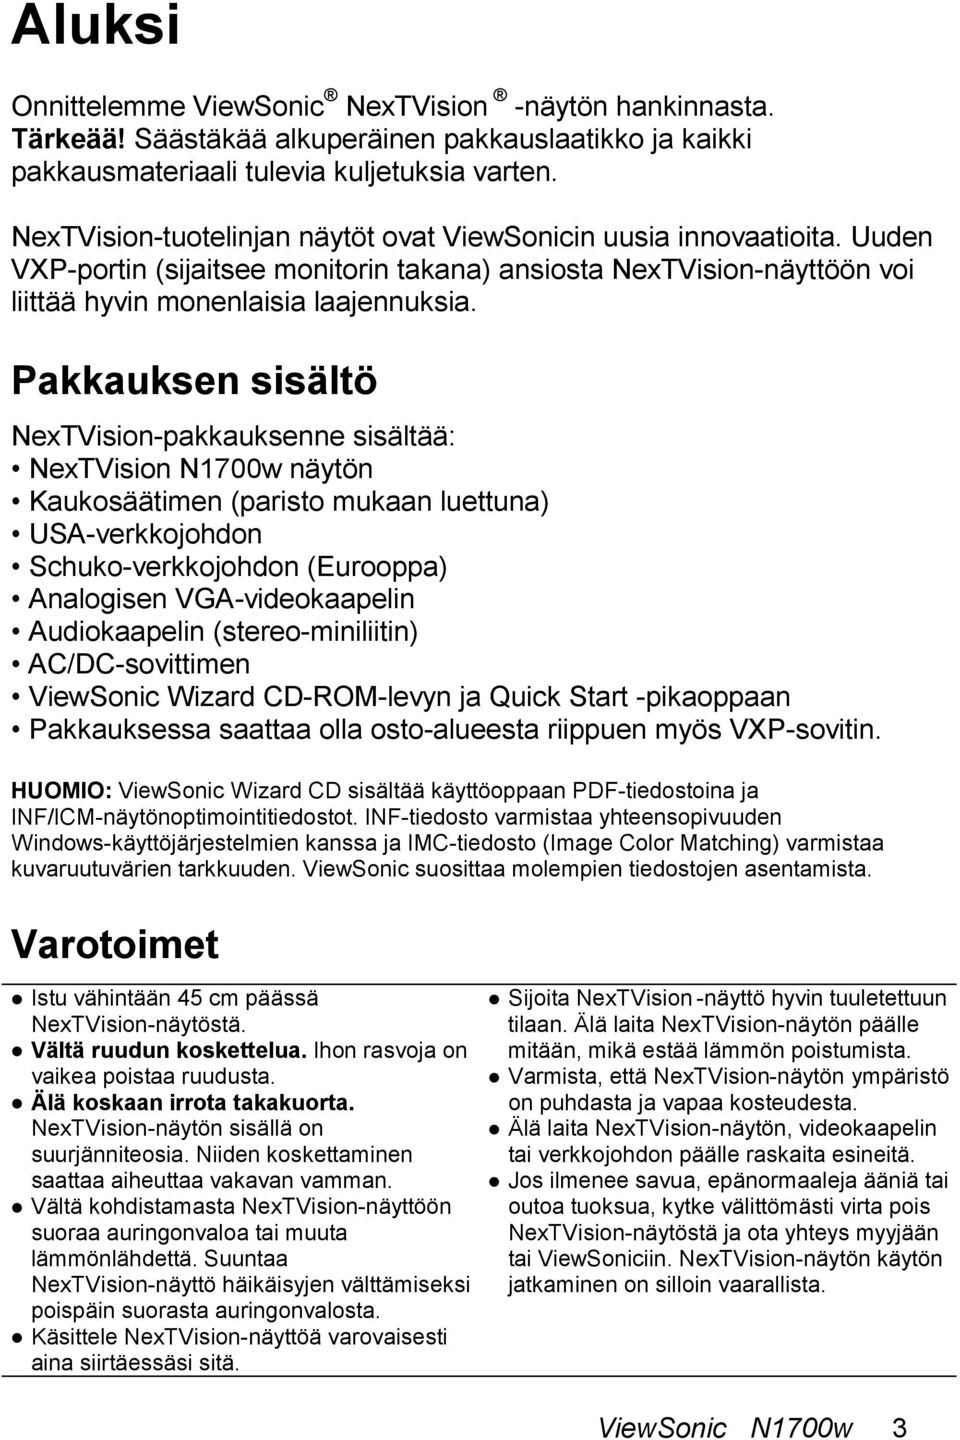 Pakkauksen sisältö NexTVision-pakkauksenne sisältää: NexTVision N1700w näytön Kaukosäätimen (paristo mukaan luettuna) USA-verkkojohdon Schuko-verkkojohdon (Eurooppa) Analogisen VGA-videokaapelin